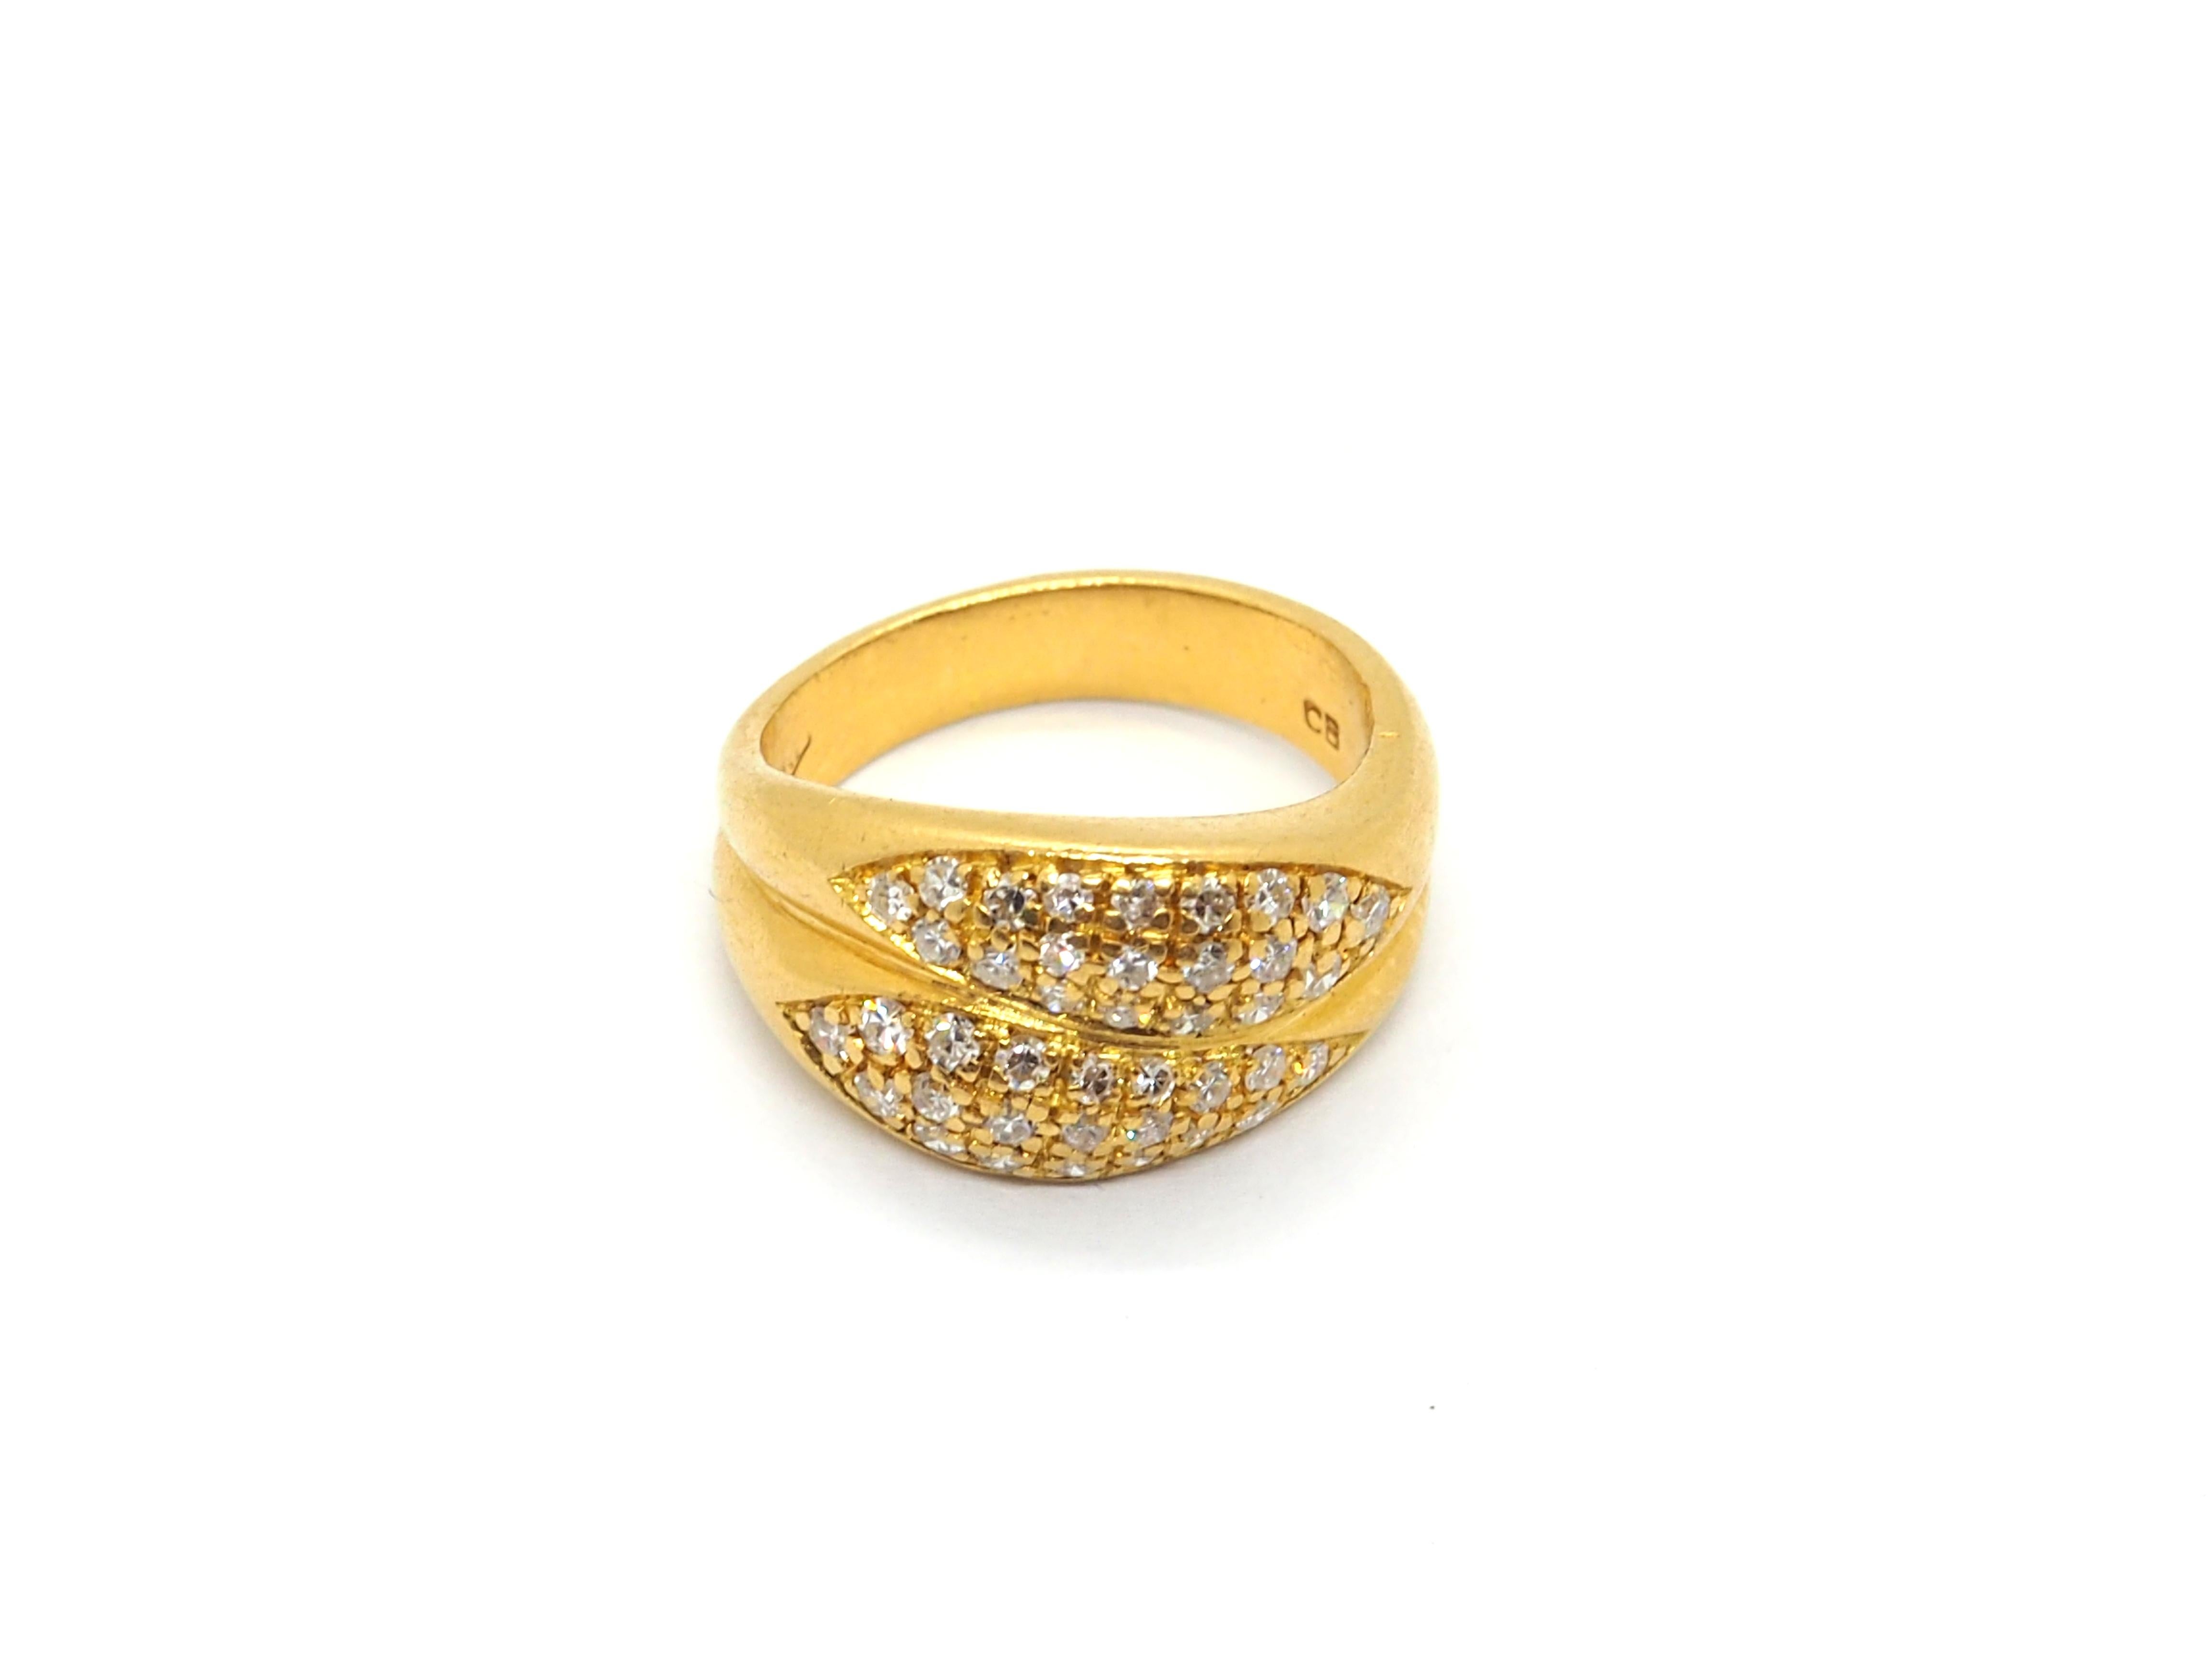 Magnifique bague pour femme en or jaune 18 carats. L'anneau est doublement fait, avec un total de 40 diamants de forme ronde incrustés sur le devant, soit environ 0,4 carat. 

Cette bague convient à toutes les occasions

Poids total 7,5 g 
Taille Eu